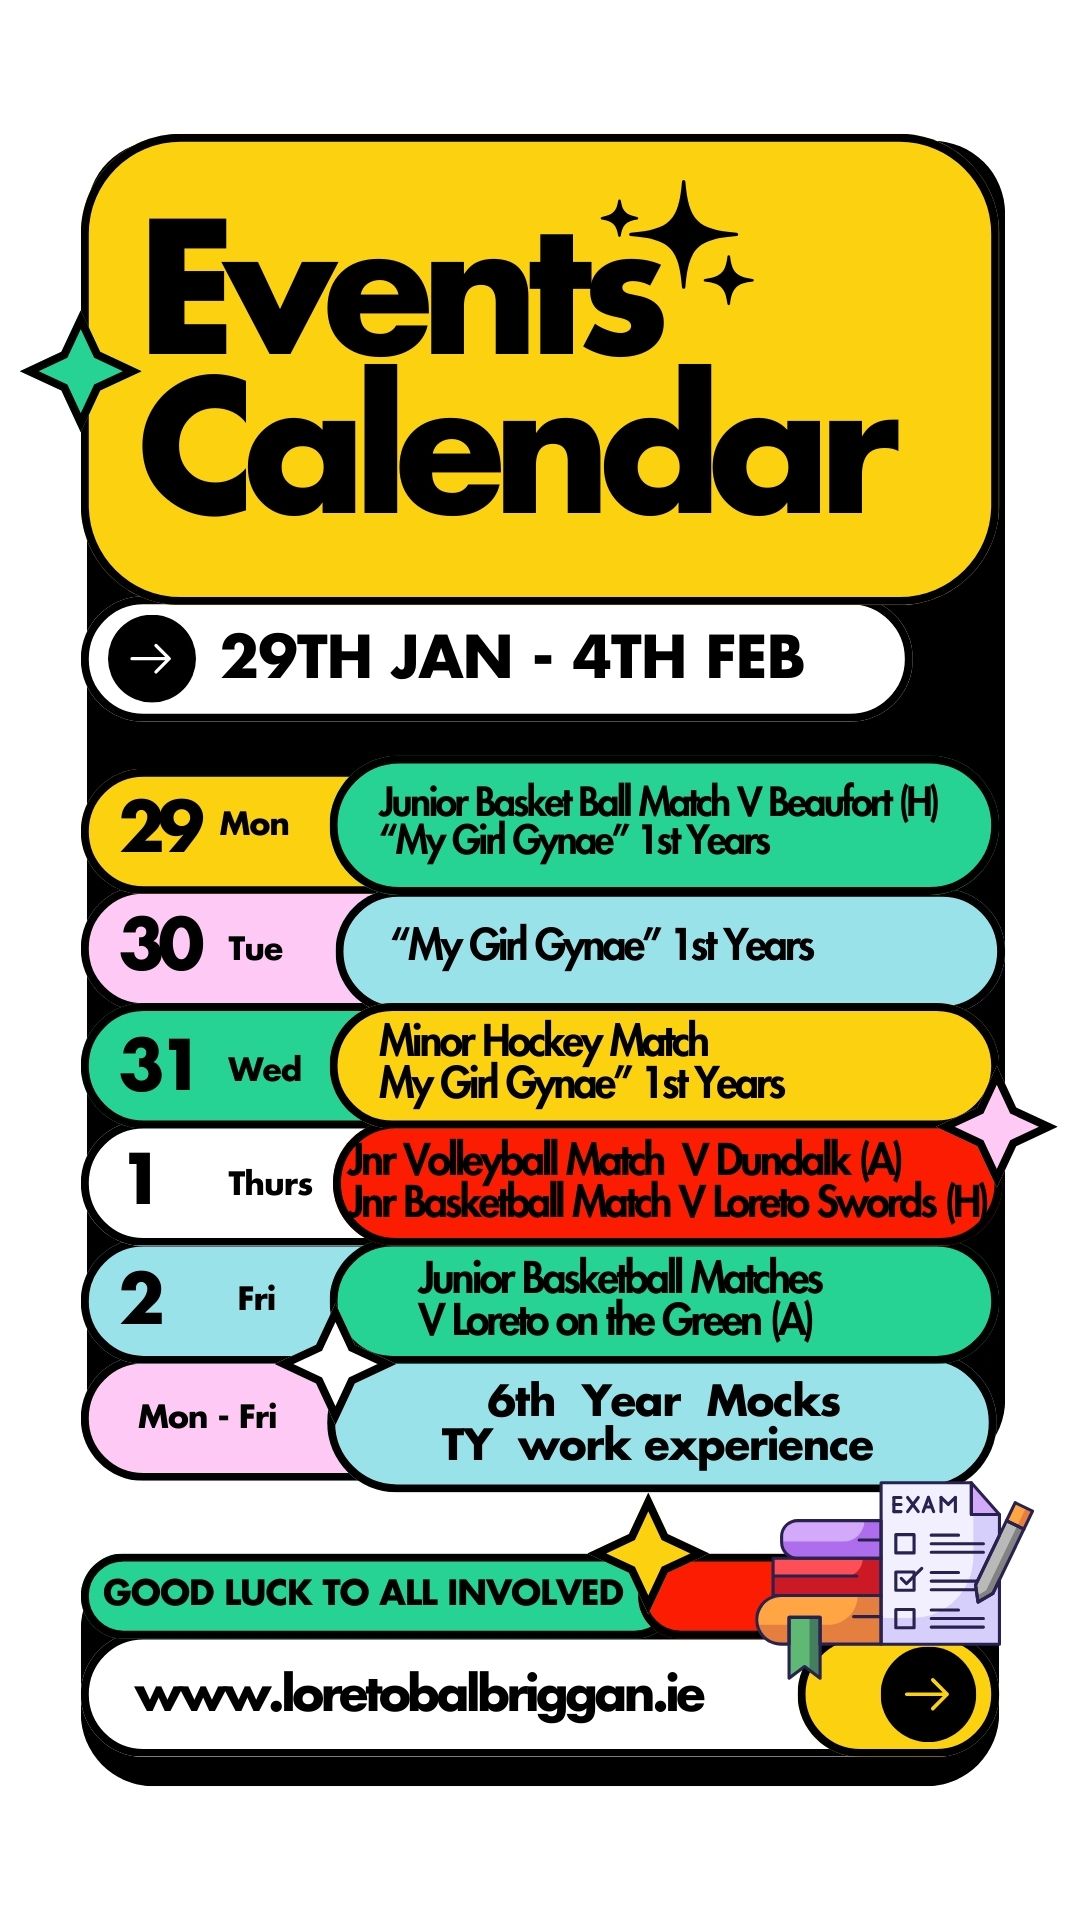 Events Calendar January 29th